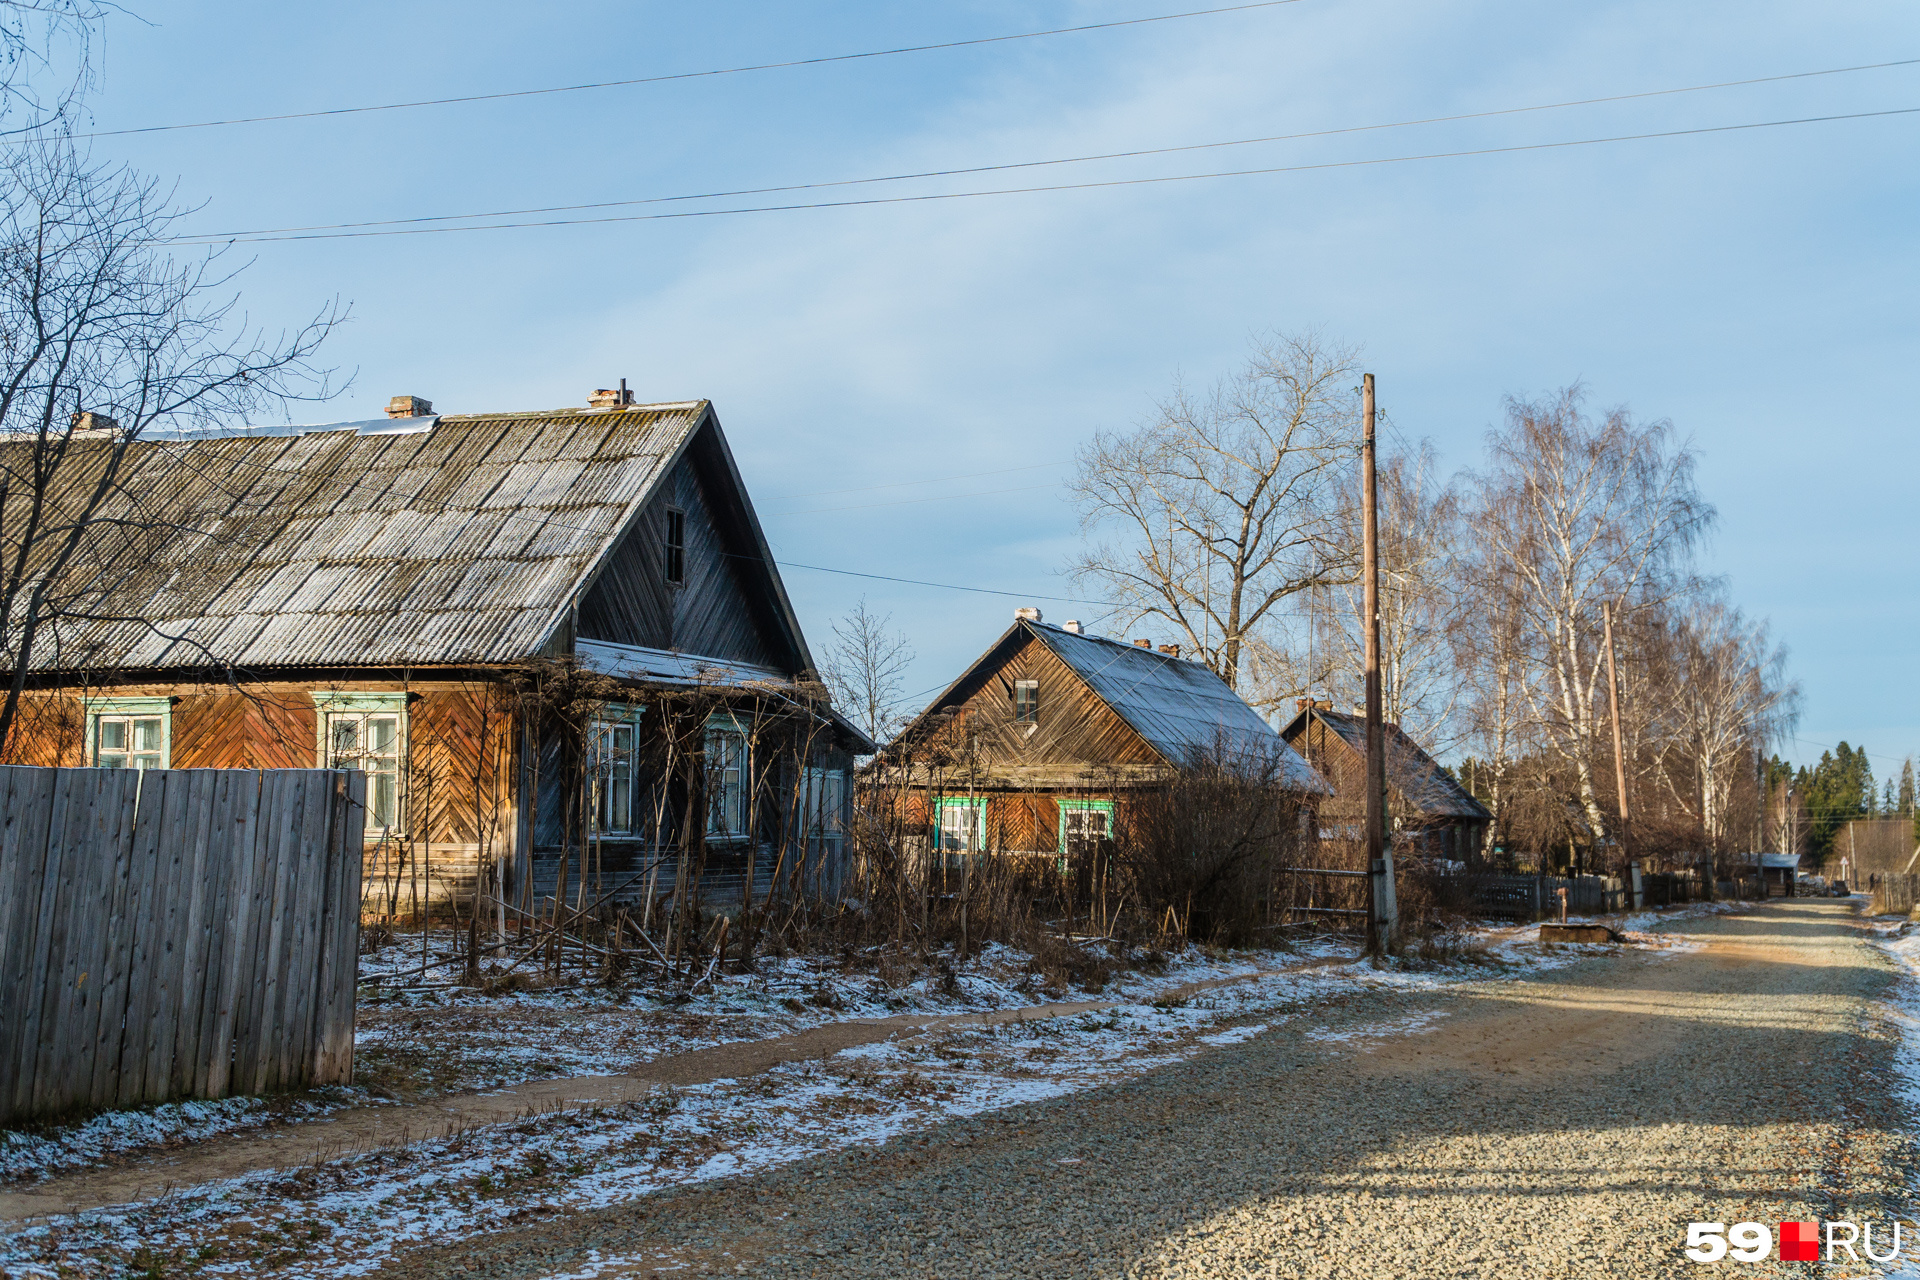 Дома в Кукетском все похожи, но заблудиться трудно: почти отовсюду видно белое здание школы